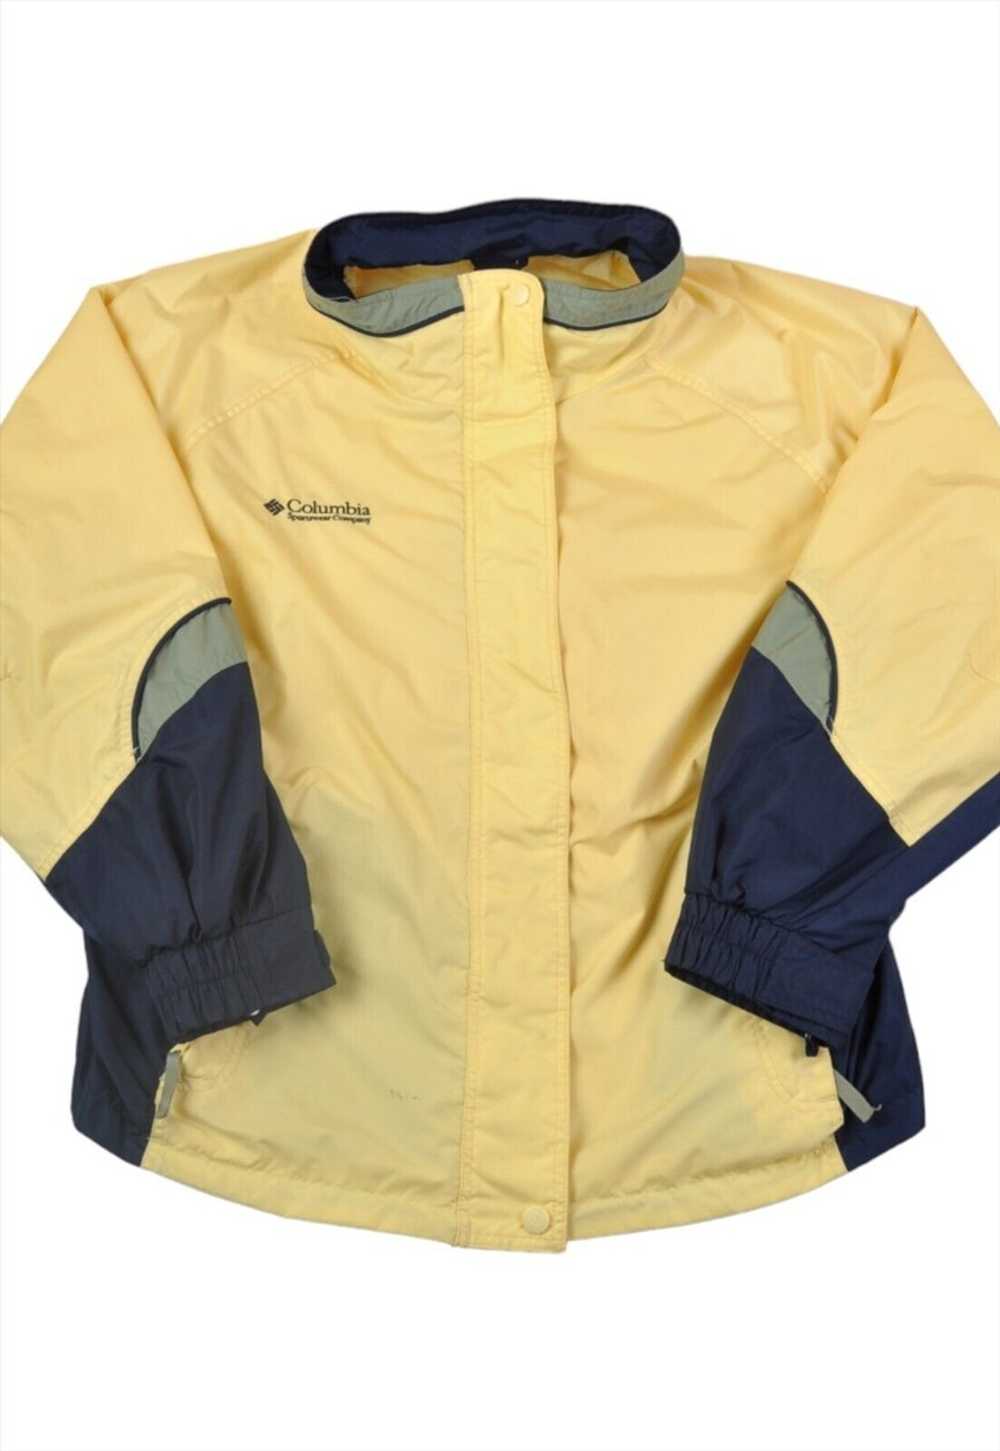 Vintage Columbia Jacket Waterproof Yellow/Navy La… - image 1